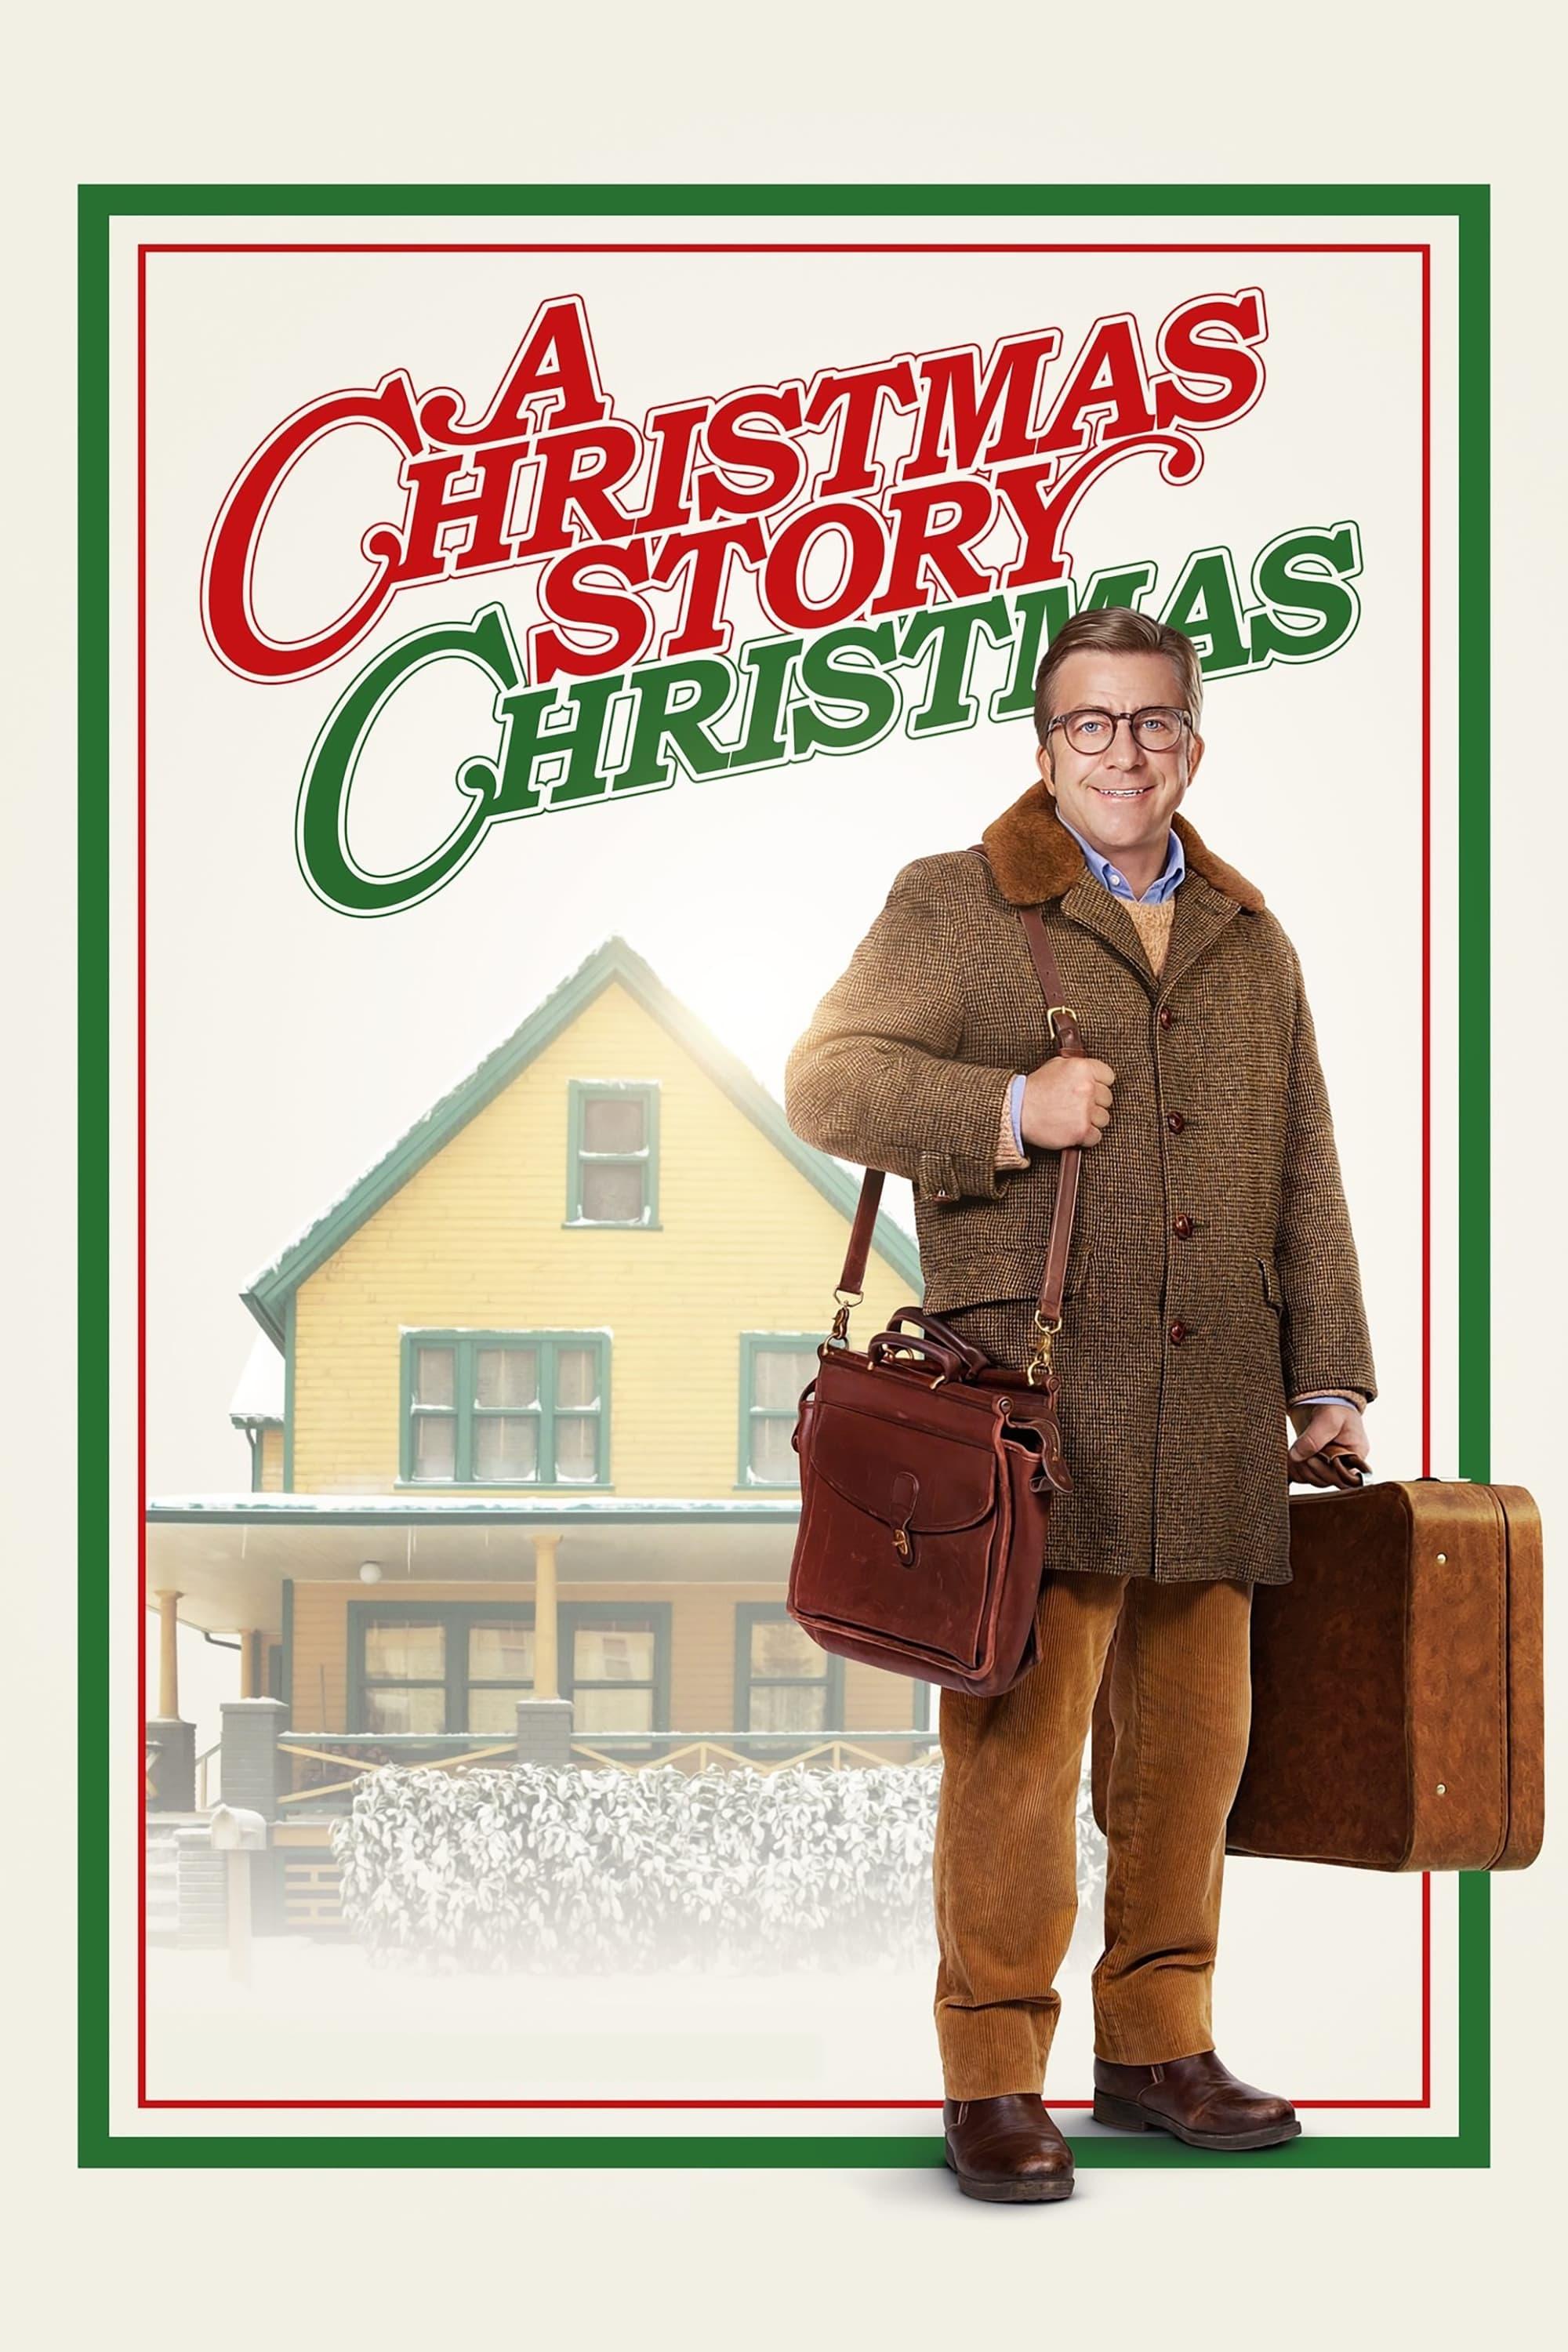 A Christmas Story Christmas poster